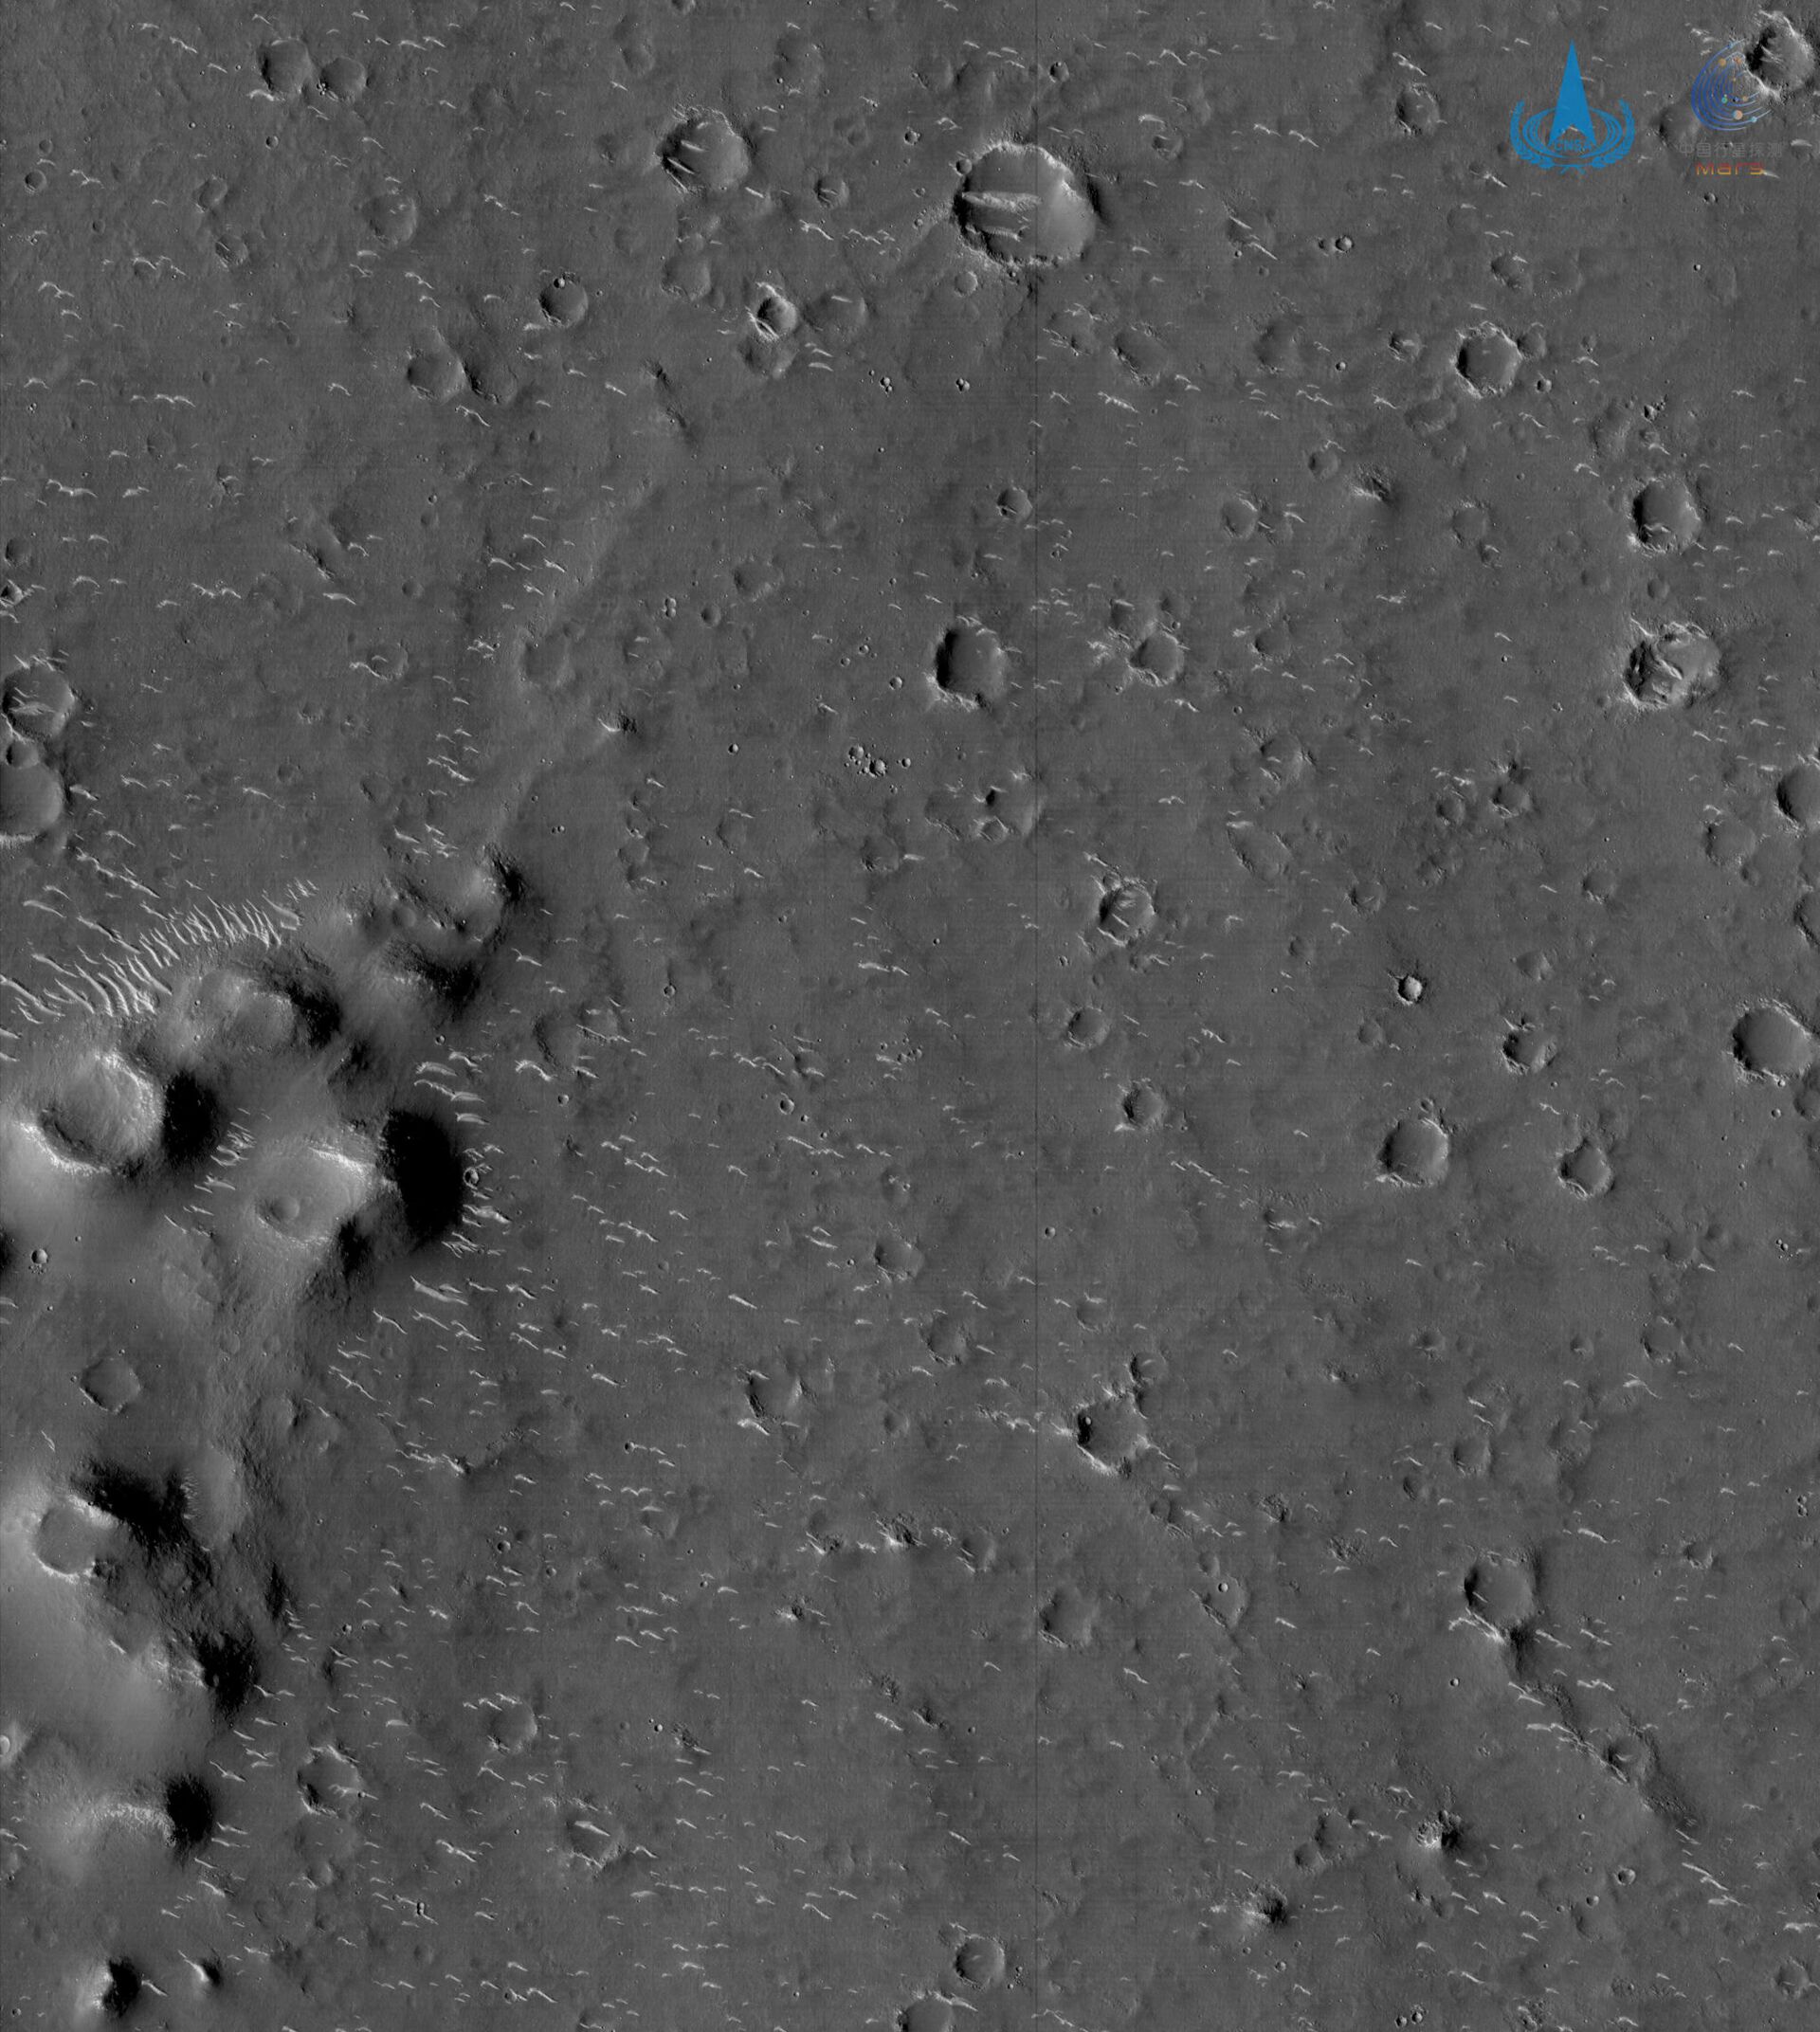 China apresenta novas imagens de Marte registradas pela sonda Tianwen-1 (FOTOS) - Sputnik Brasil, 1920, 04.03.2021